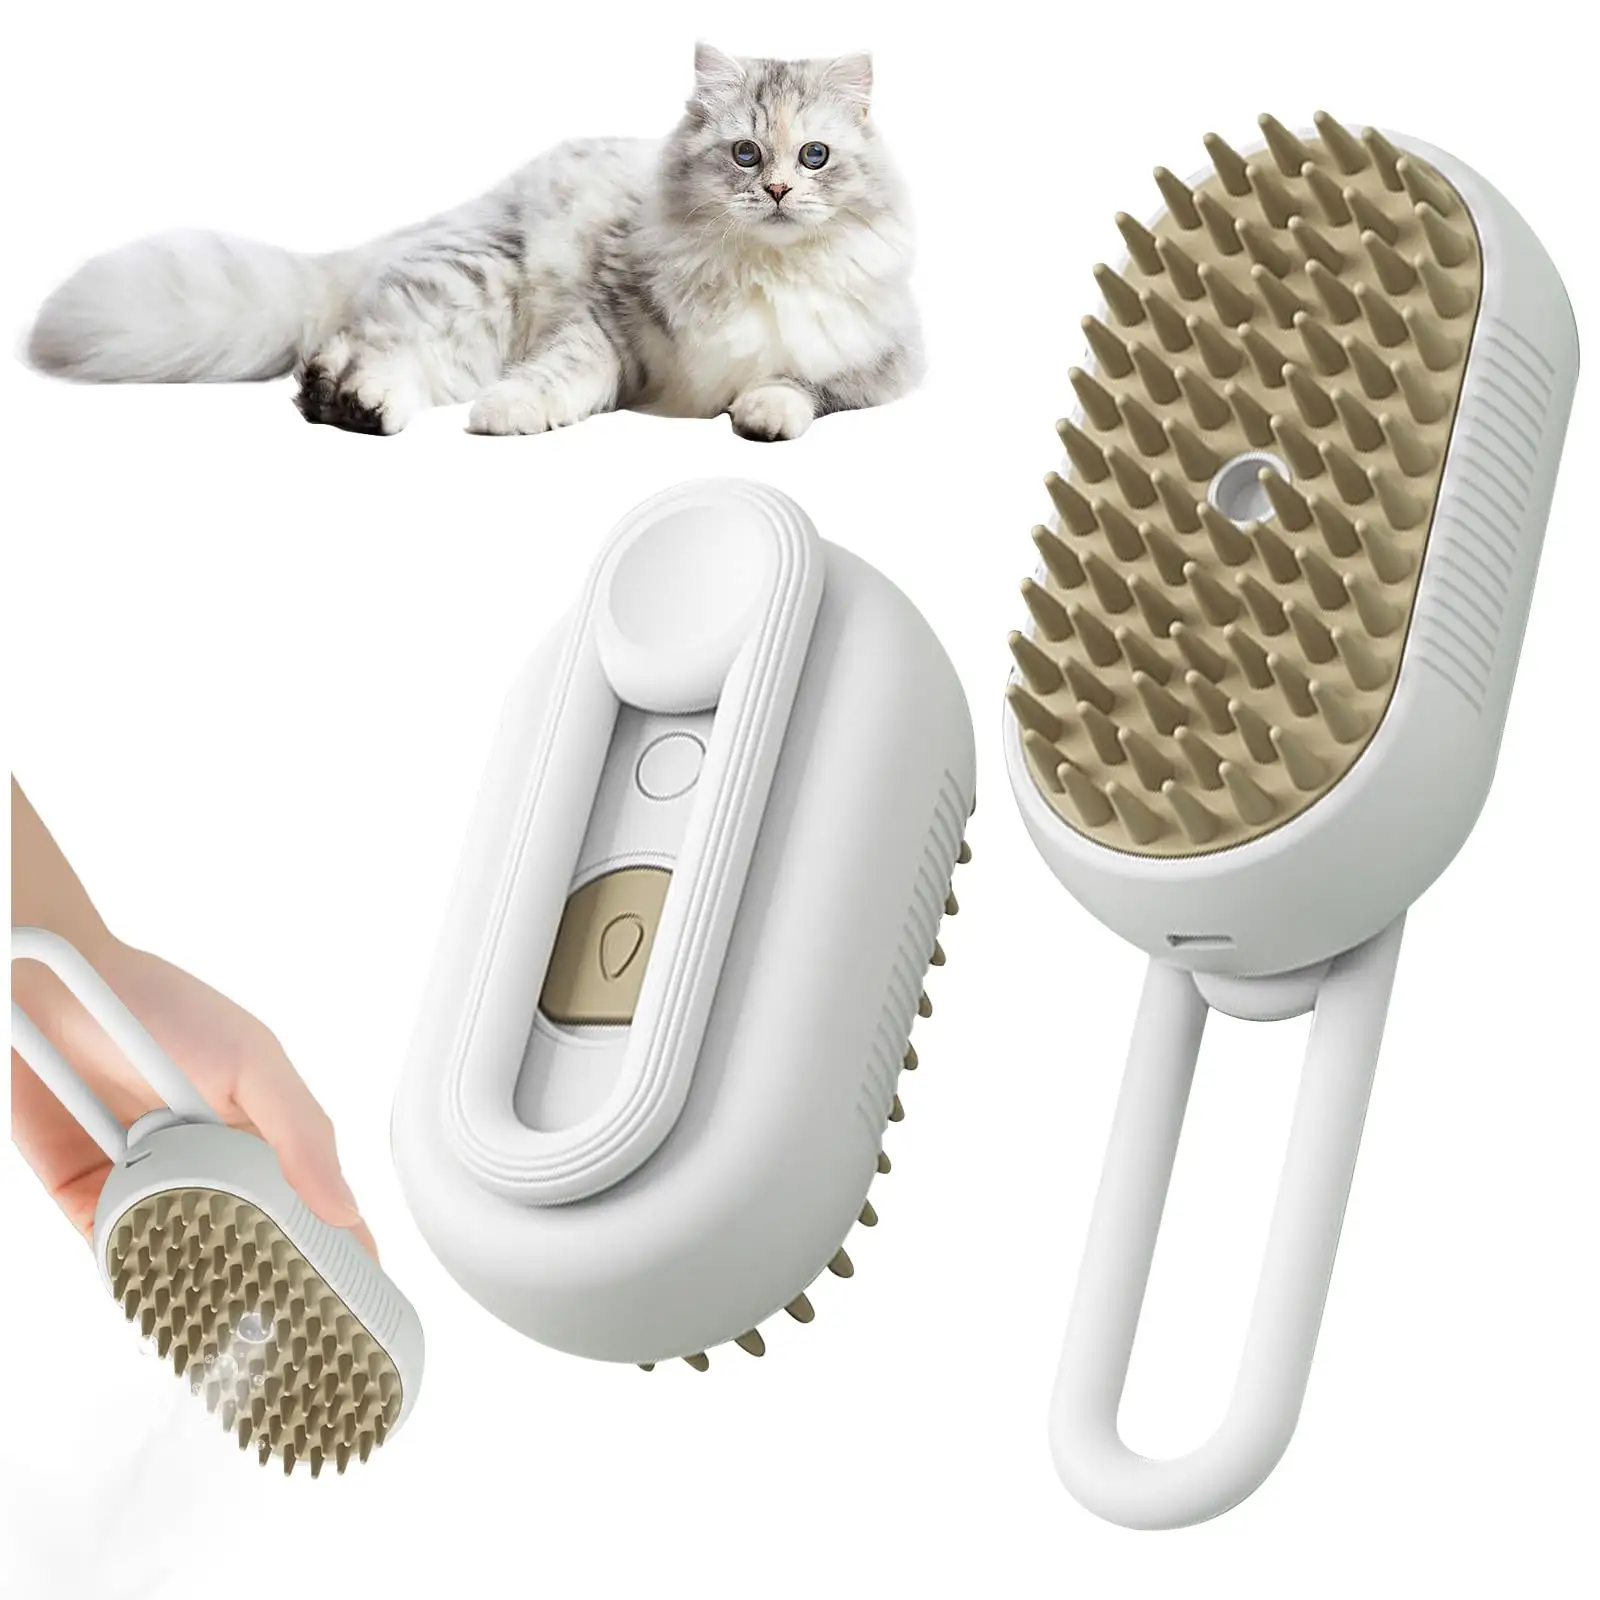 ZMaker nuova spazzola per cani gatto fumante 3 In 1 portatile per la depilazione di animali domestici Spray elettrico spazzola per peli di gatto a vapore